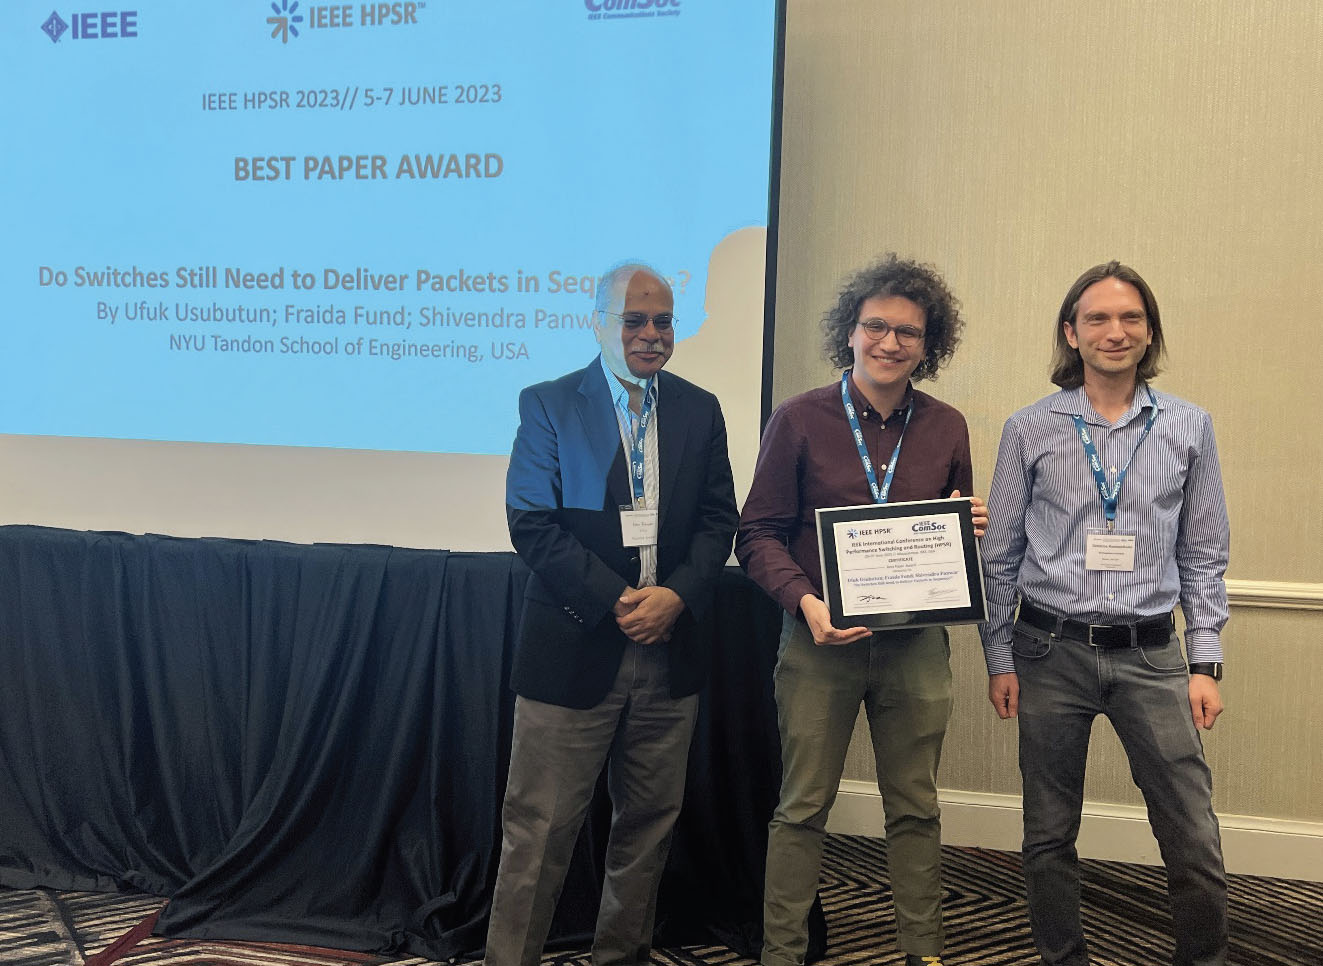 IEEE HPSR: BEST PAPER AWARD